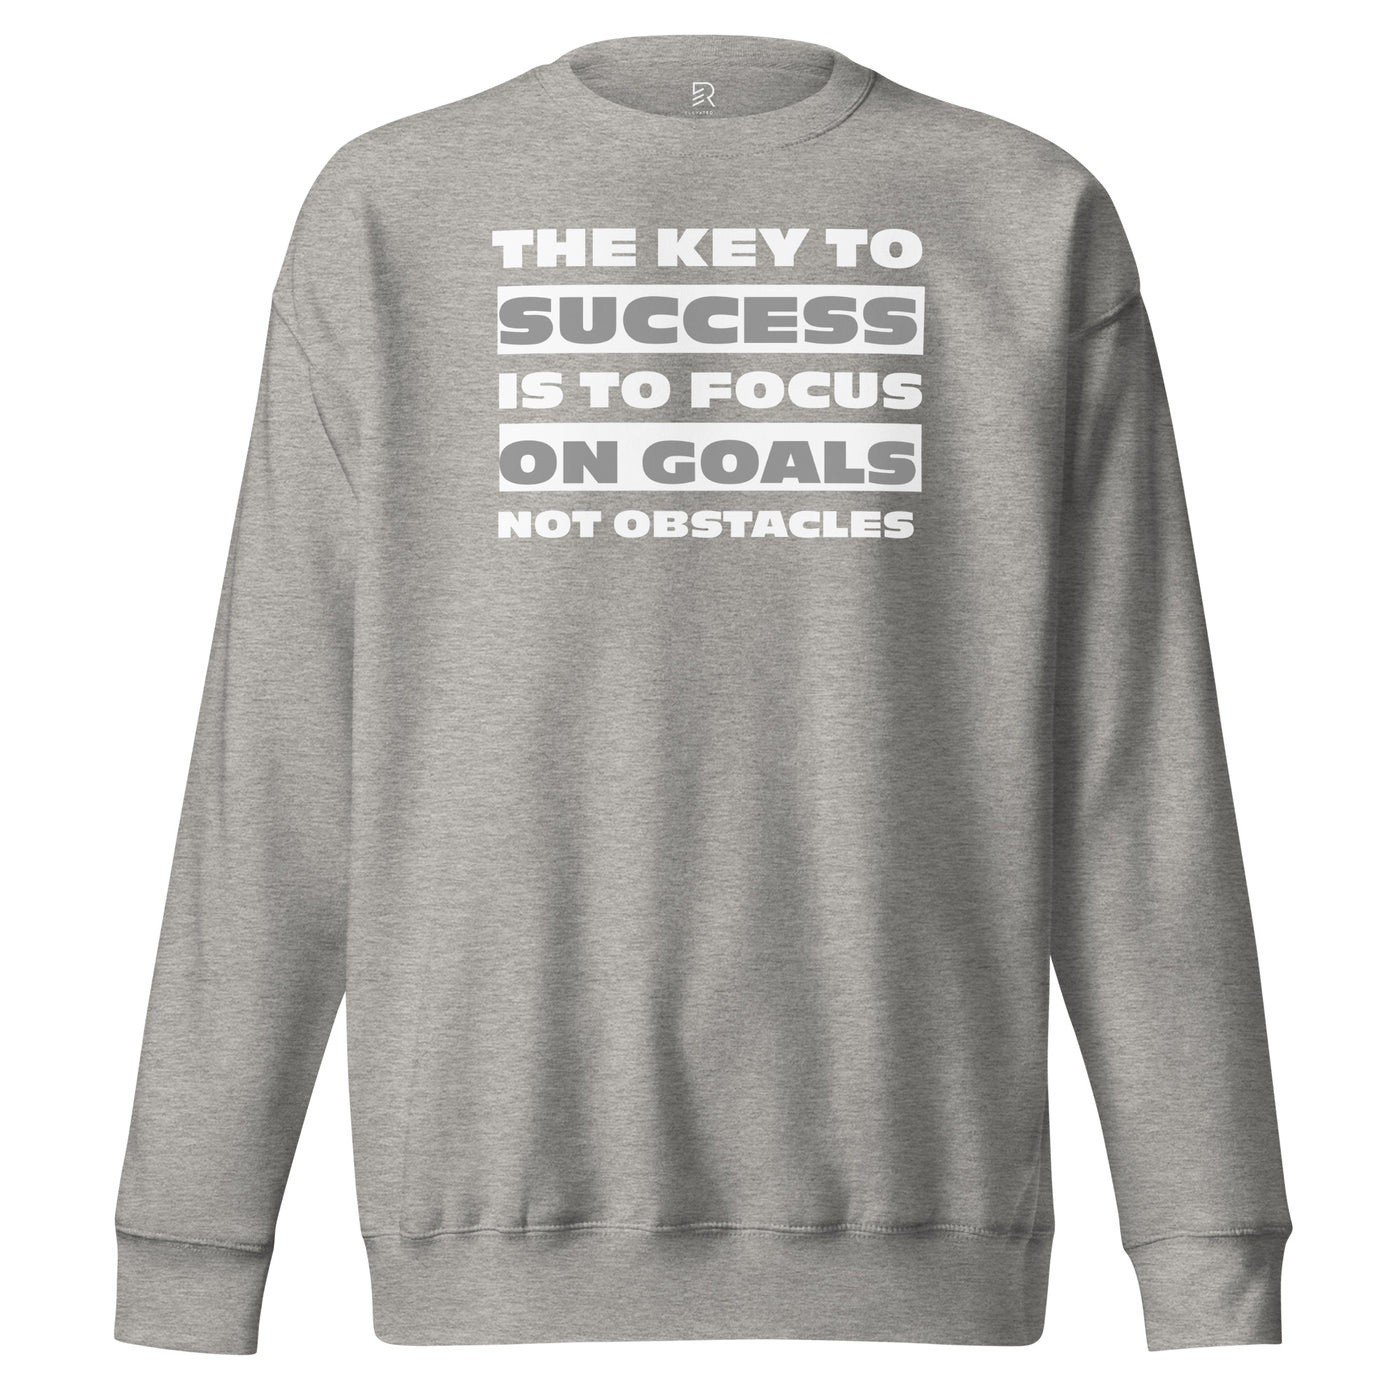 Women's Premium Gray Sweatshirt - Focus on Goals